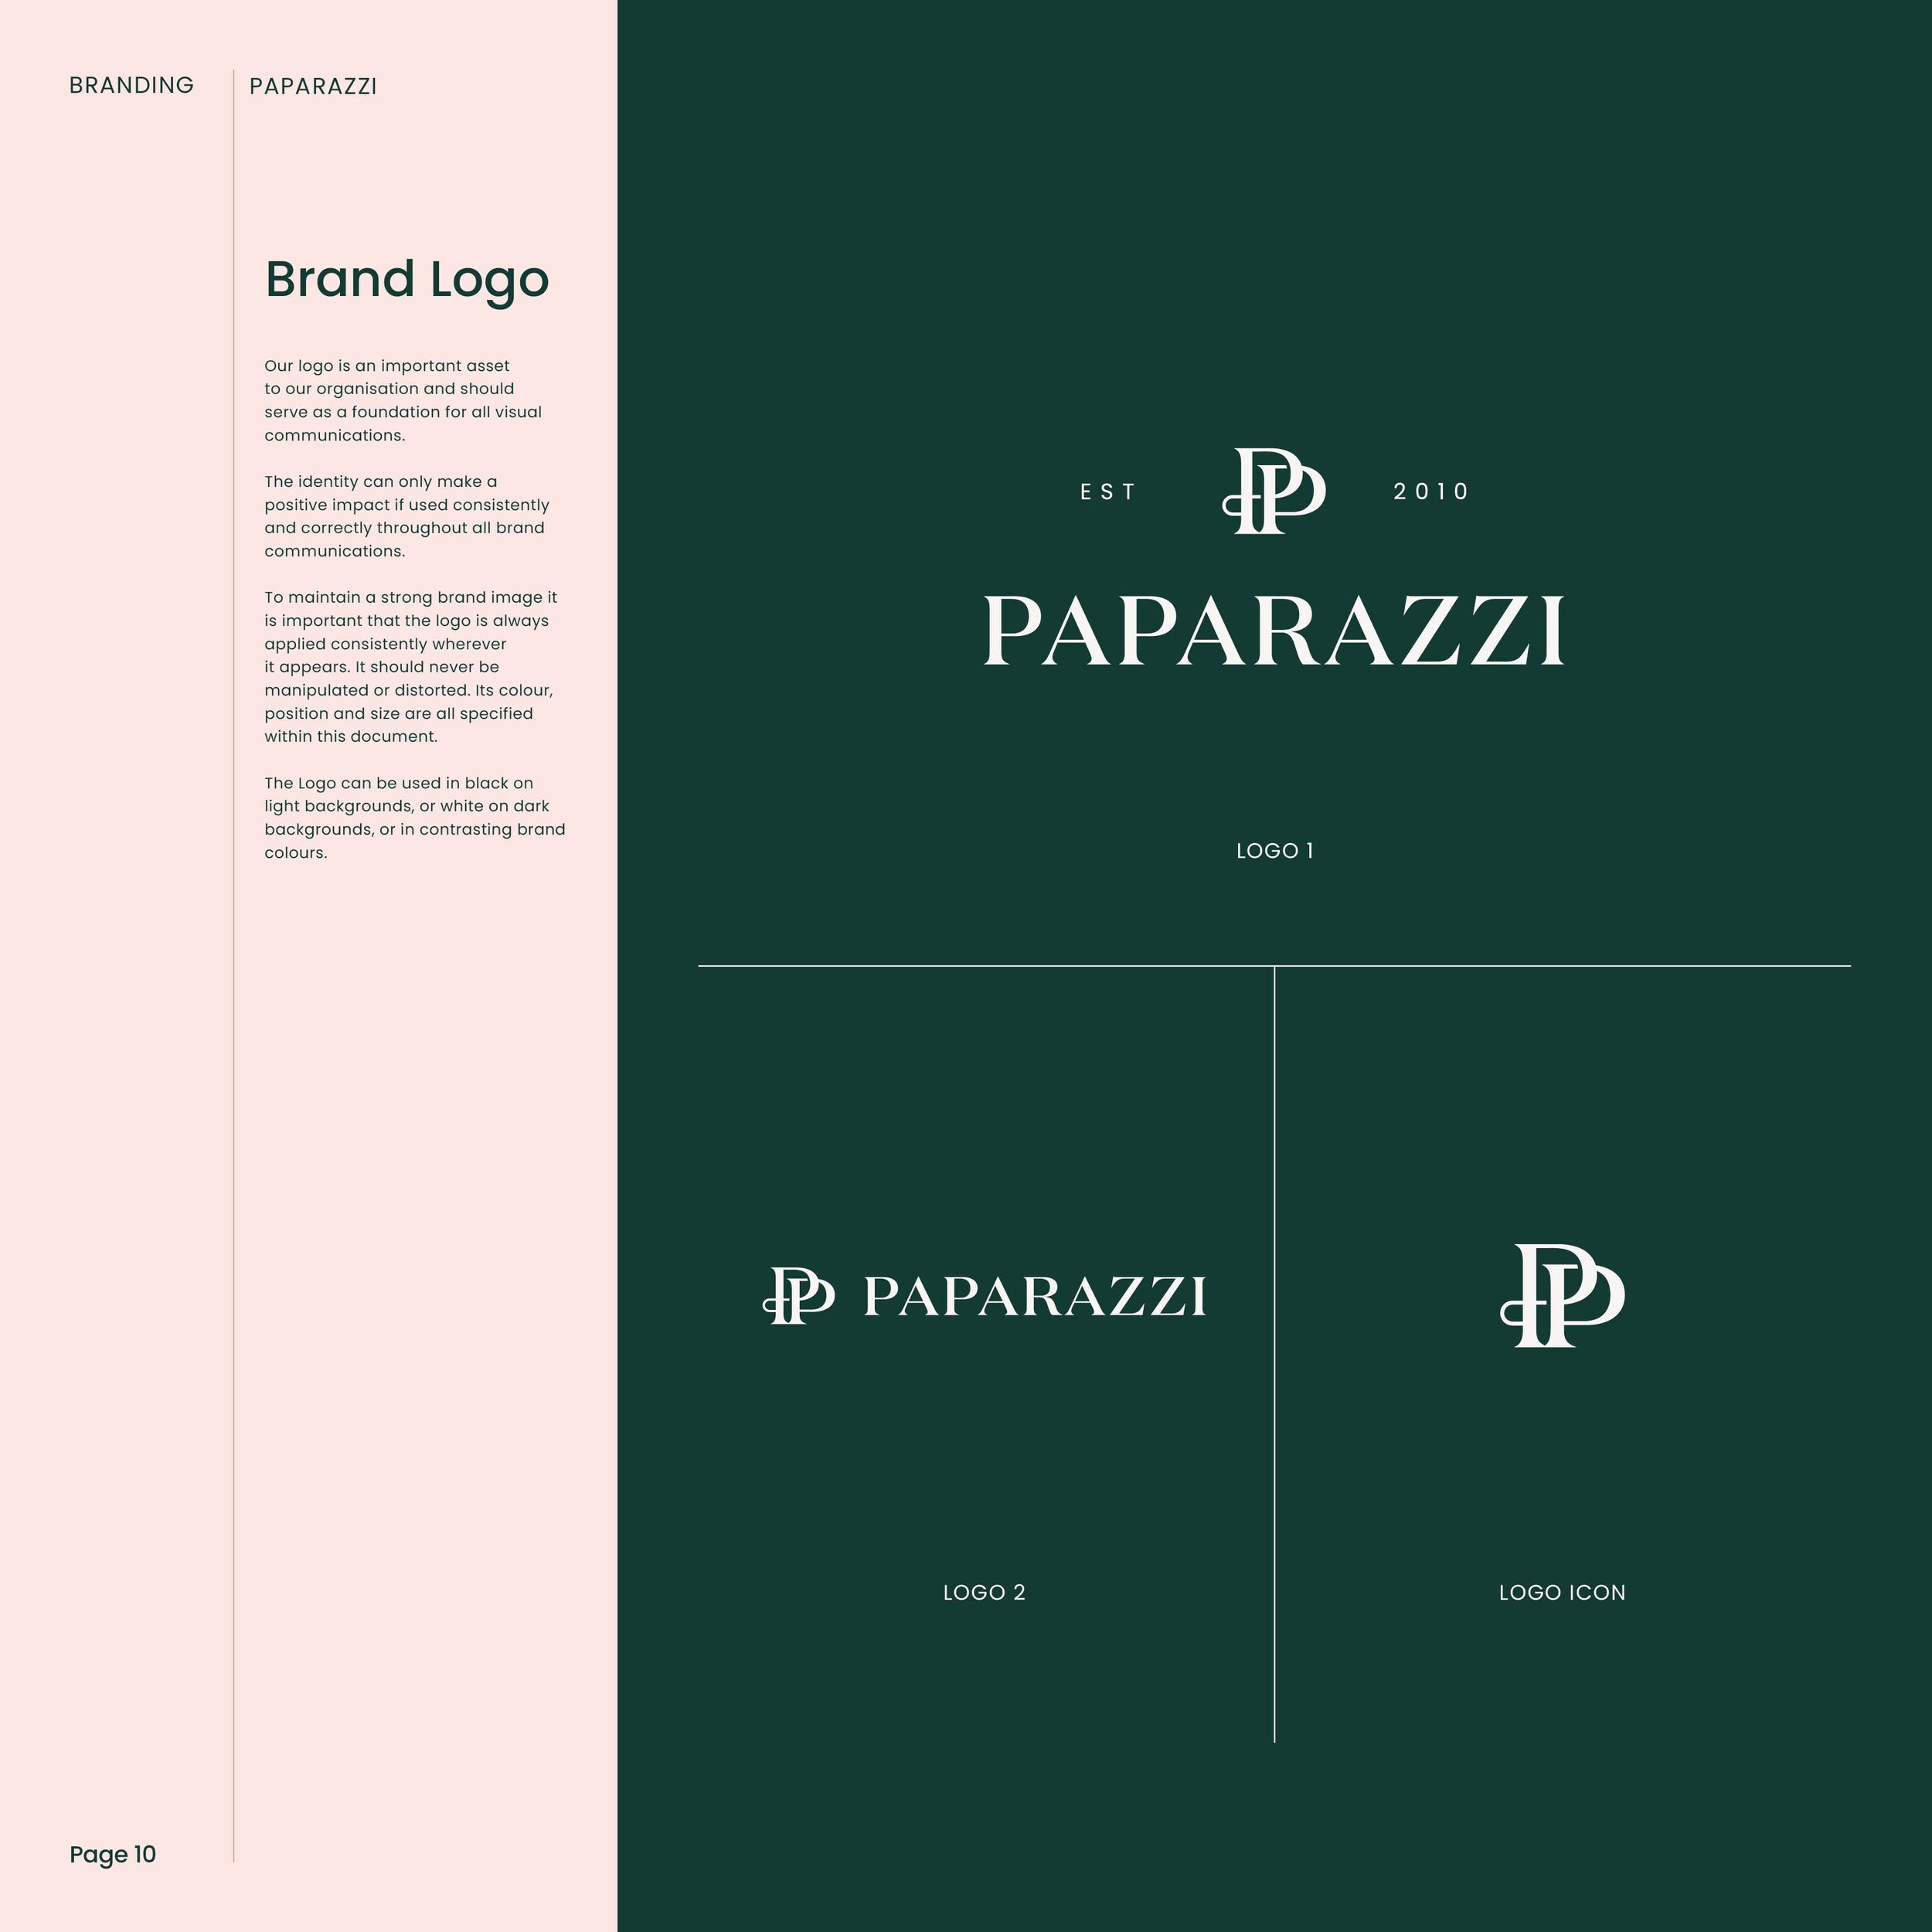 Paparazzi Logo and Brand Presentation V510.jpg